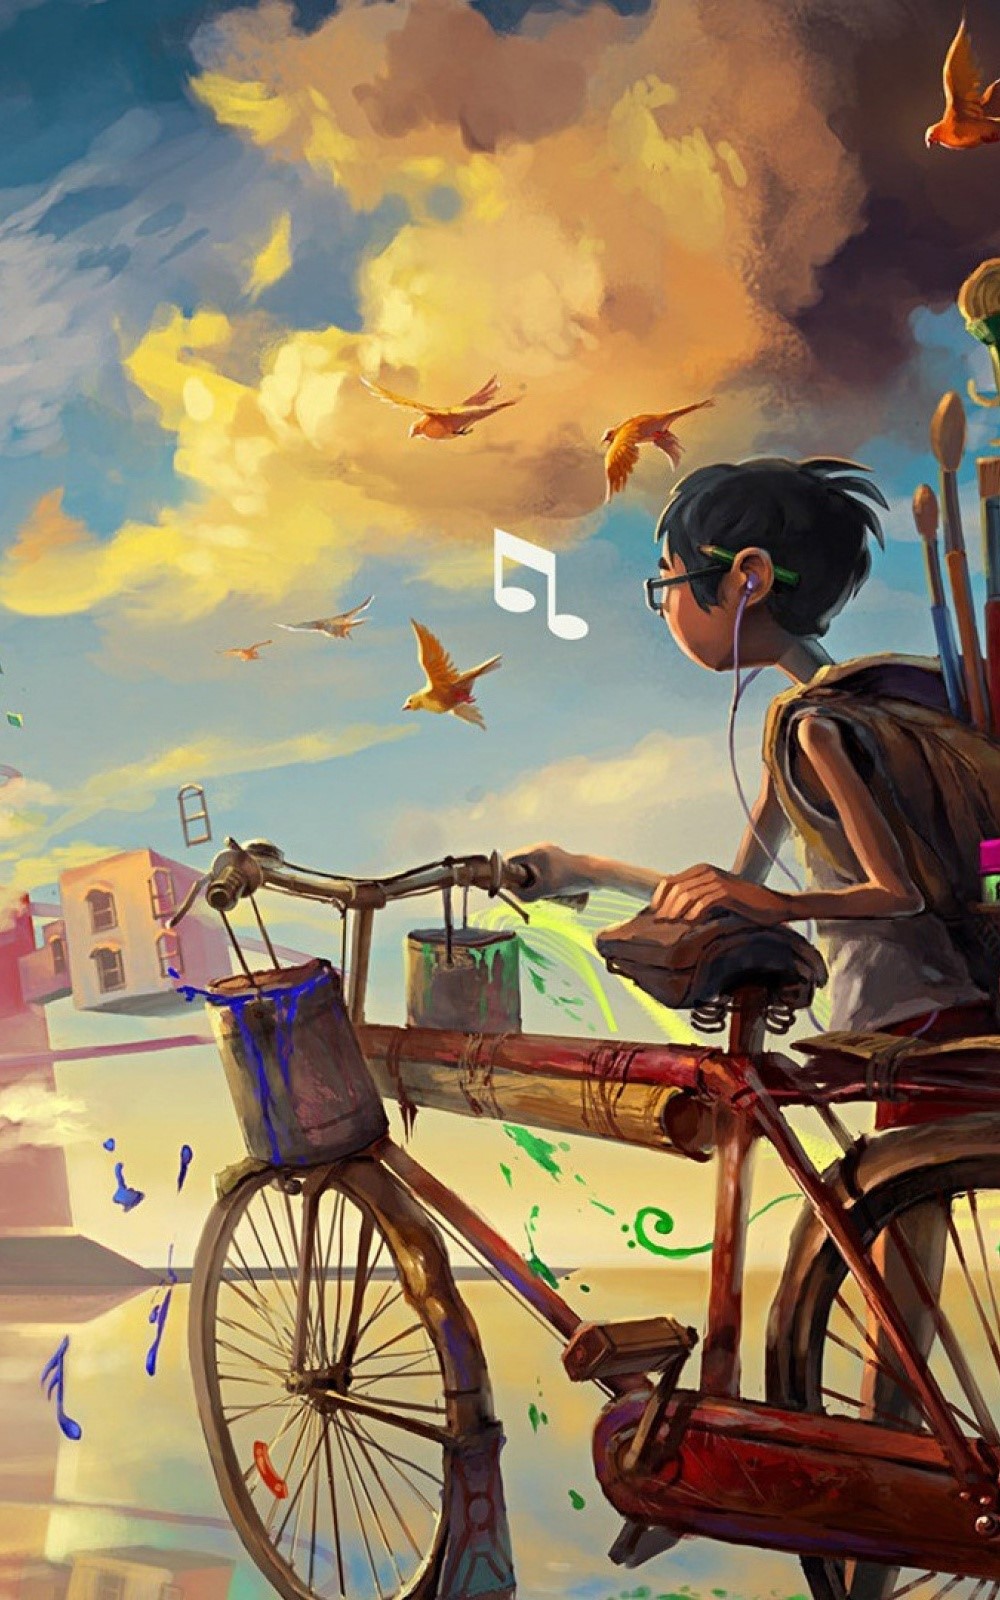 sfondi musicali hd per android,illustrazione,bicicletta,veicolo,risciò,cielo